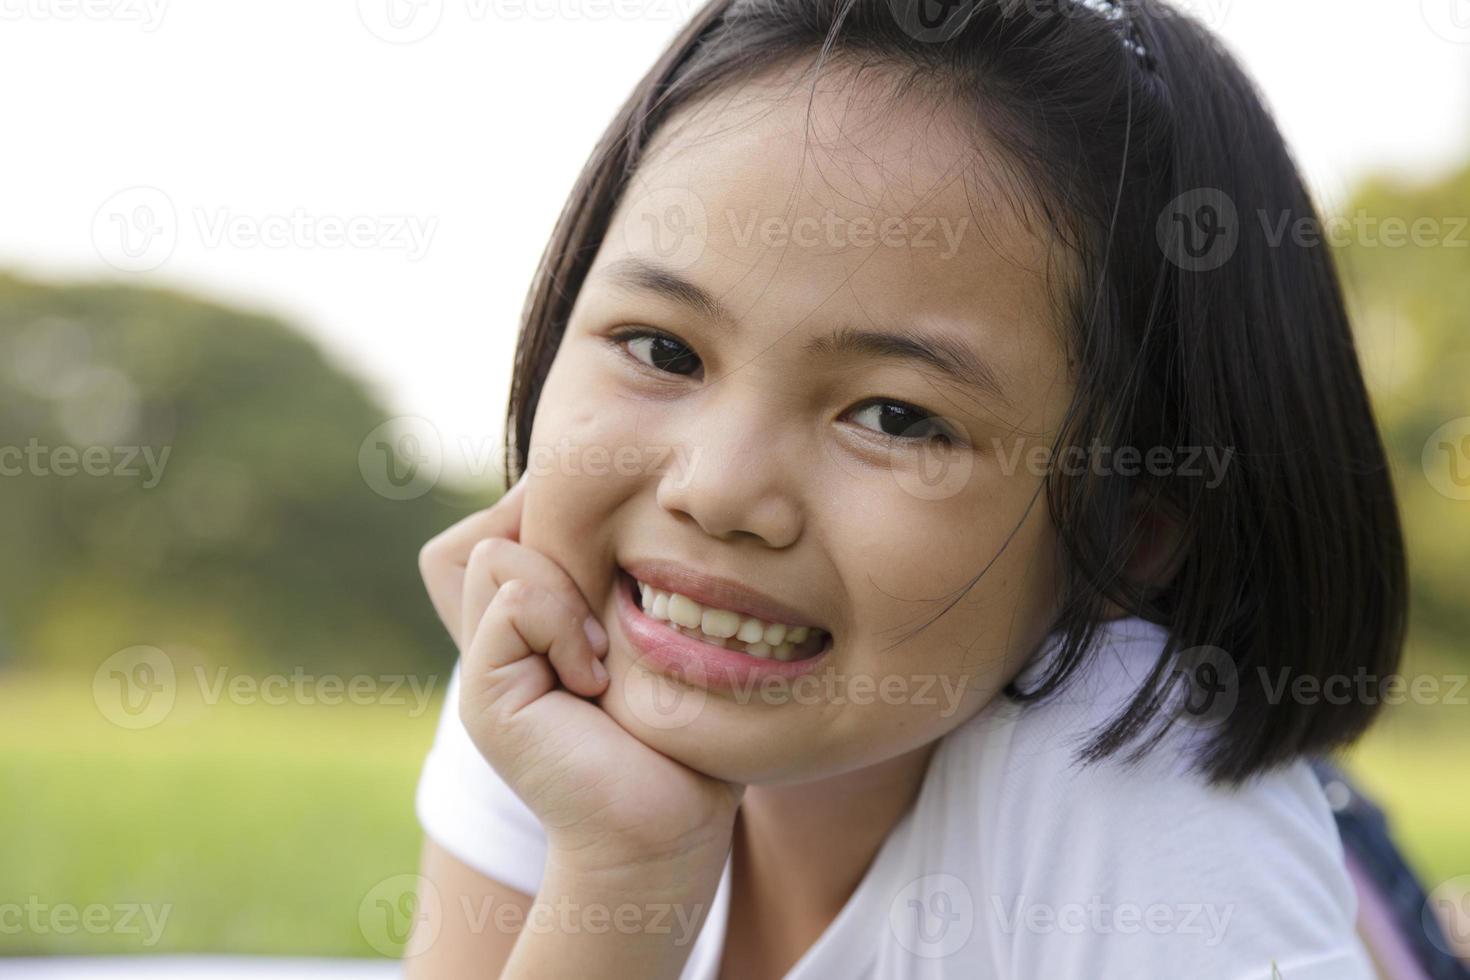 la bambina asiatica si rilassa e sorride felicemente nel parco foto